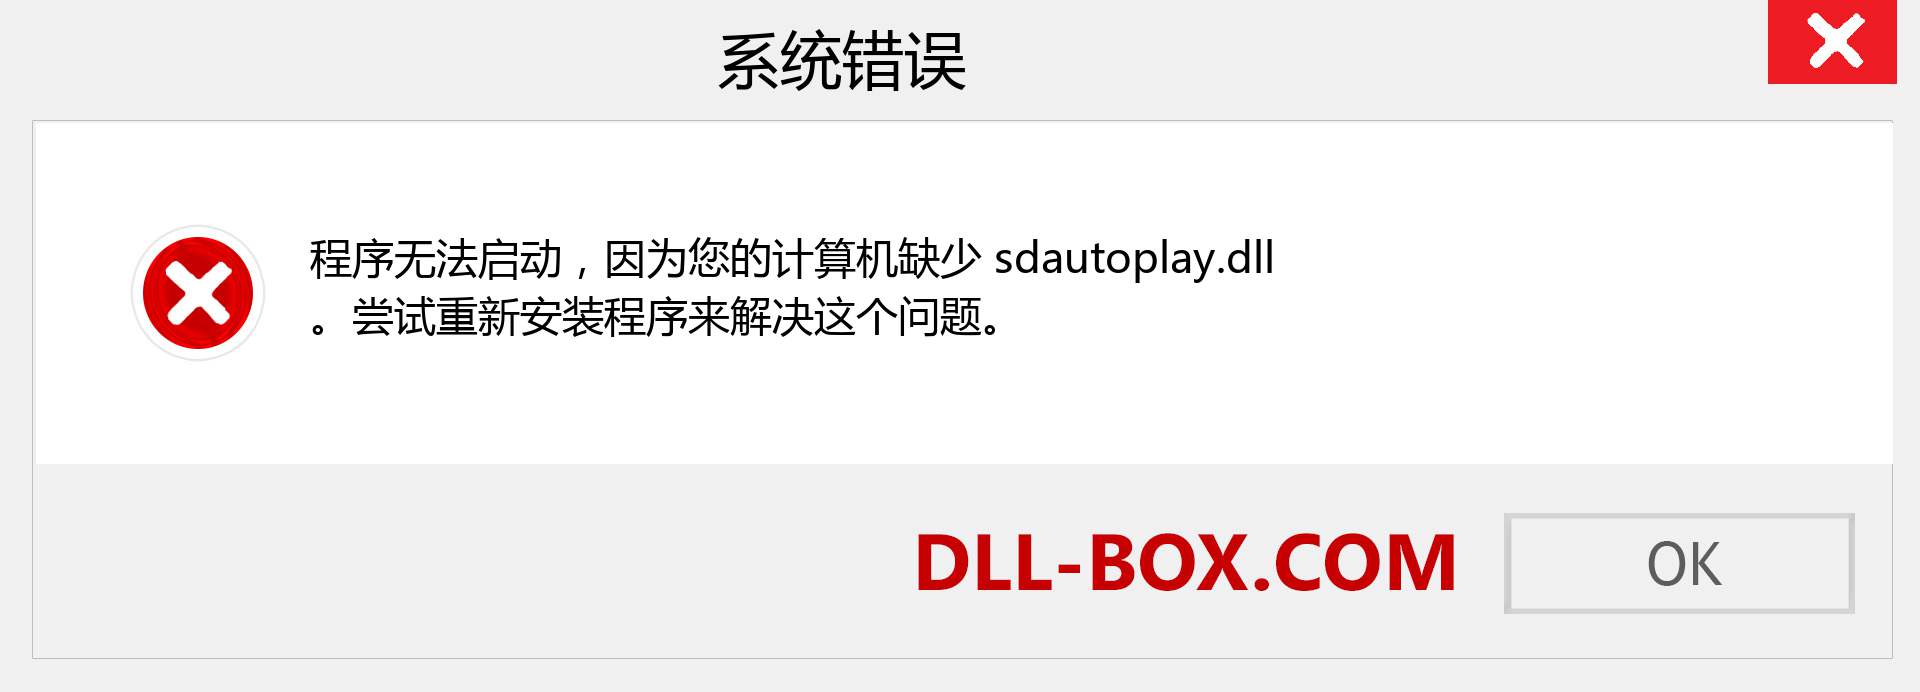 sdautoplay.dll 文件丢失？。 适用于 Windows 7、8、10 的下载 - 修复 Windows、照片、图像上的 sdautoplay dll 丢失错误